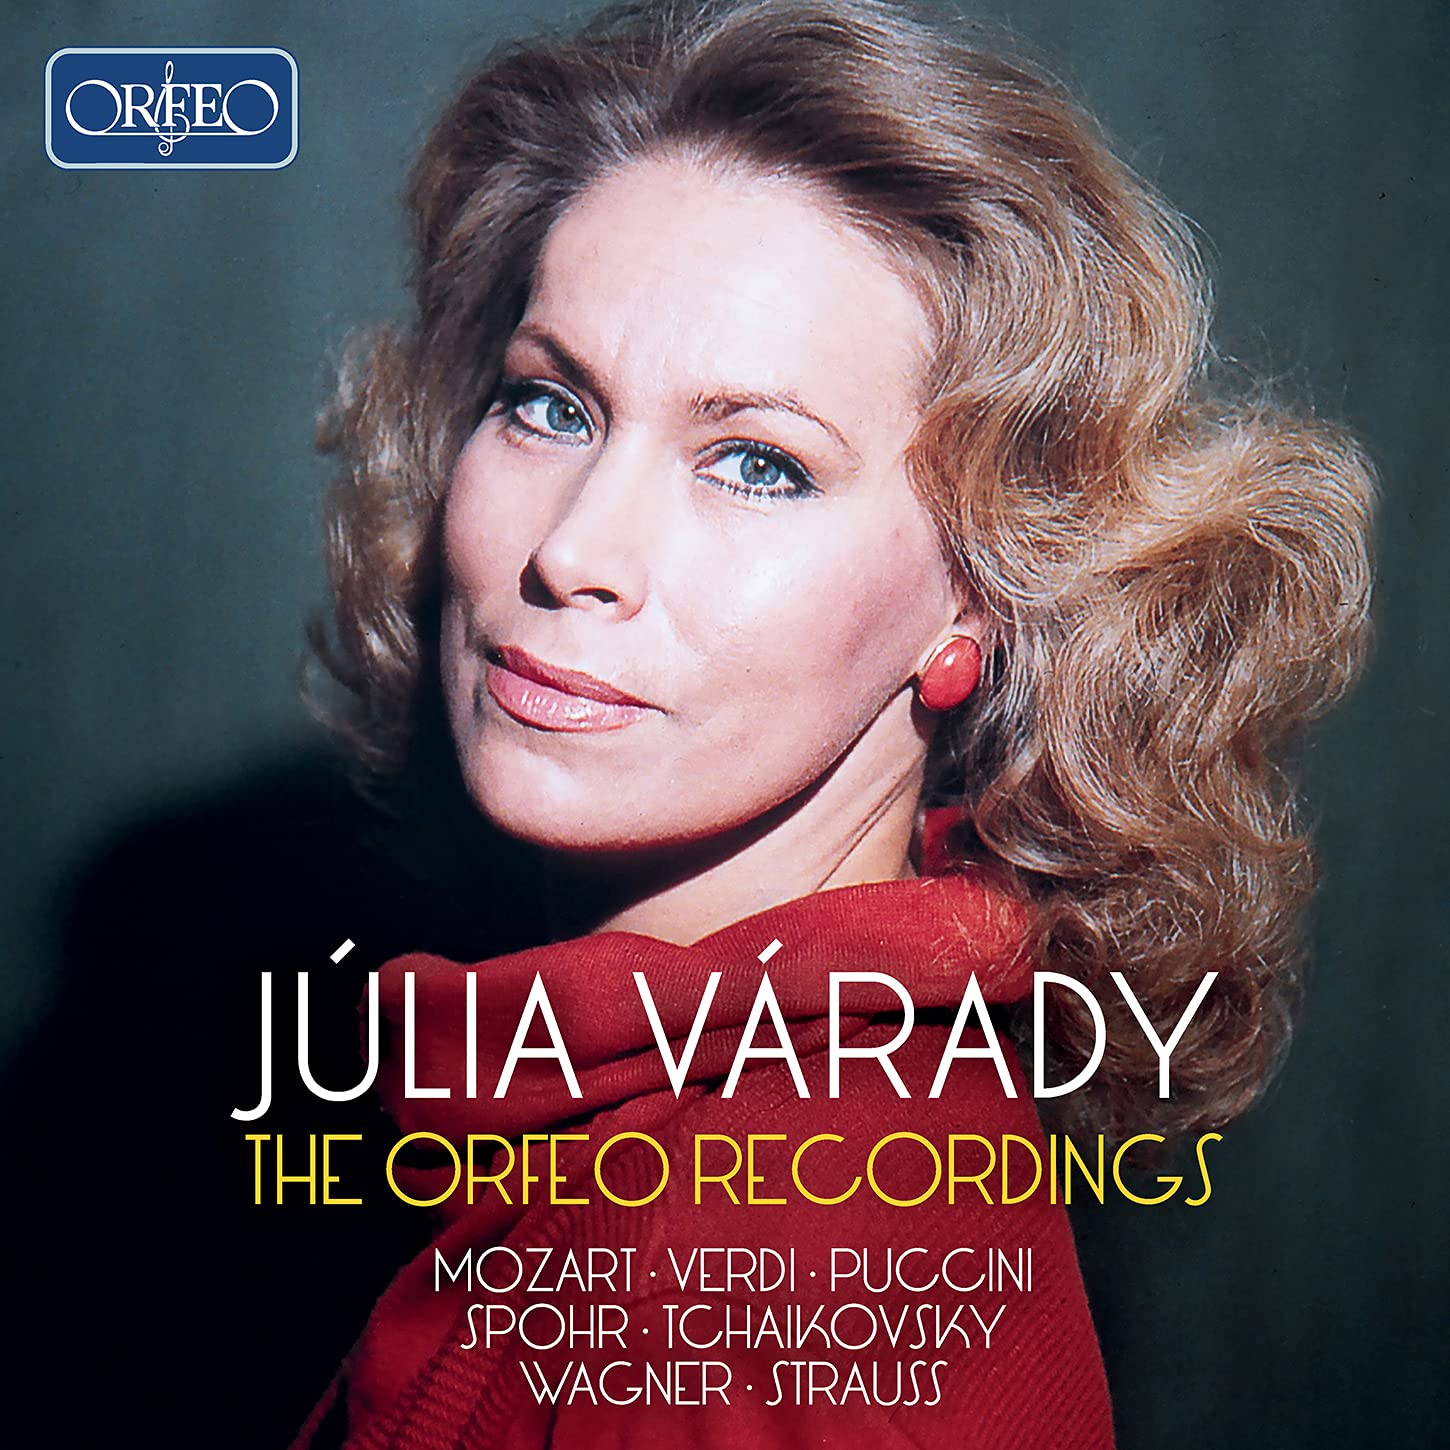 Audio Cd Julia Varady: The Orfeo Recordings (10 Cd) NUOVO SIGILLATO, EDIZIONE DEL 06/08/2021 SUBITO DISPONIBILE